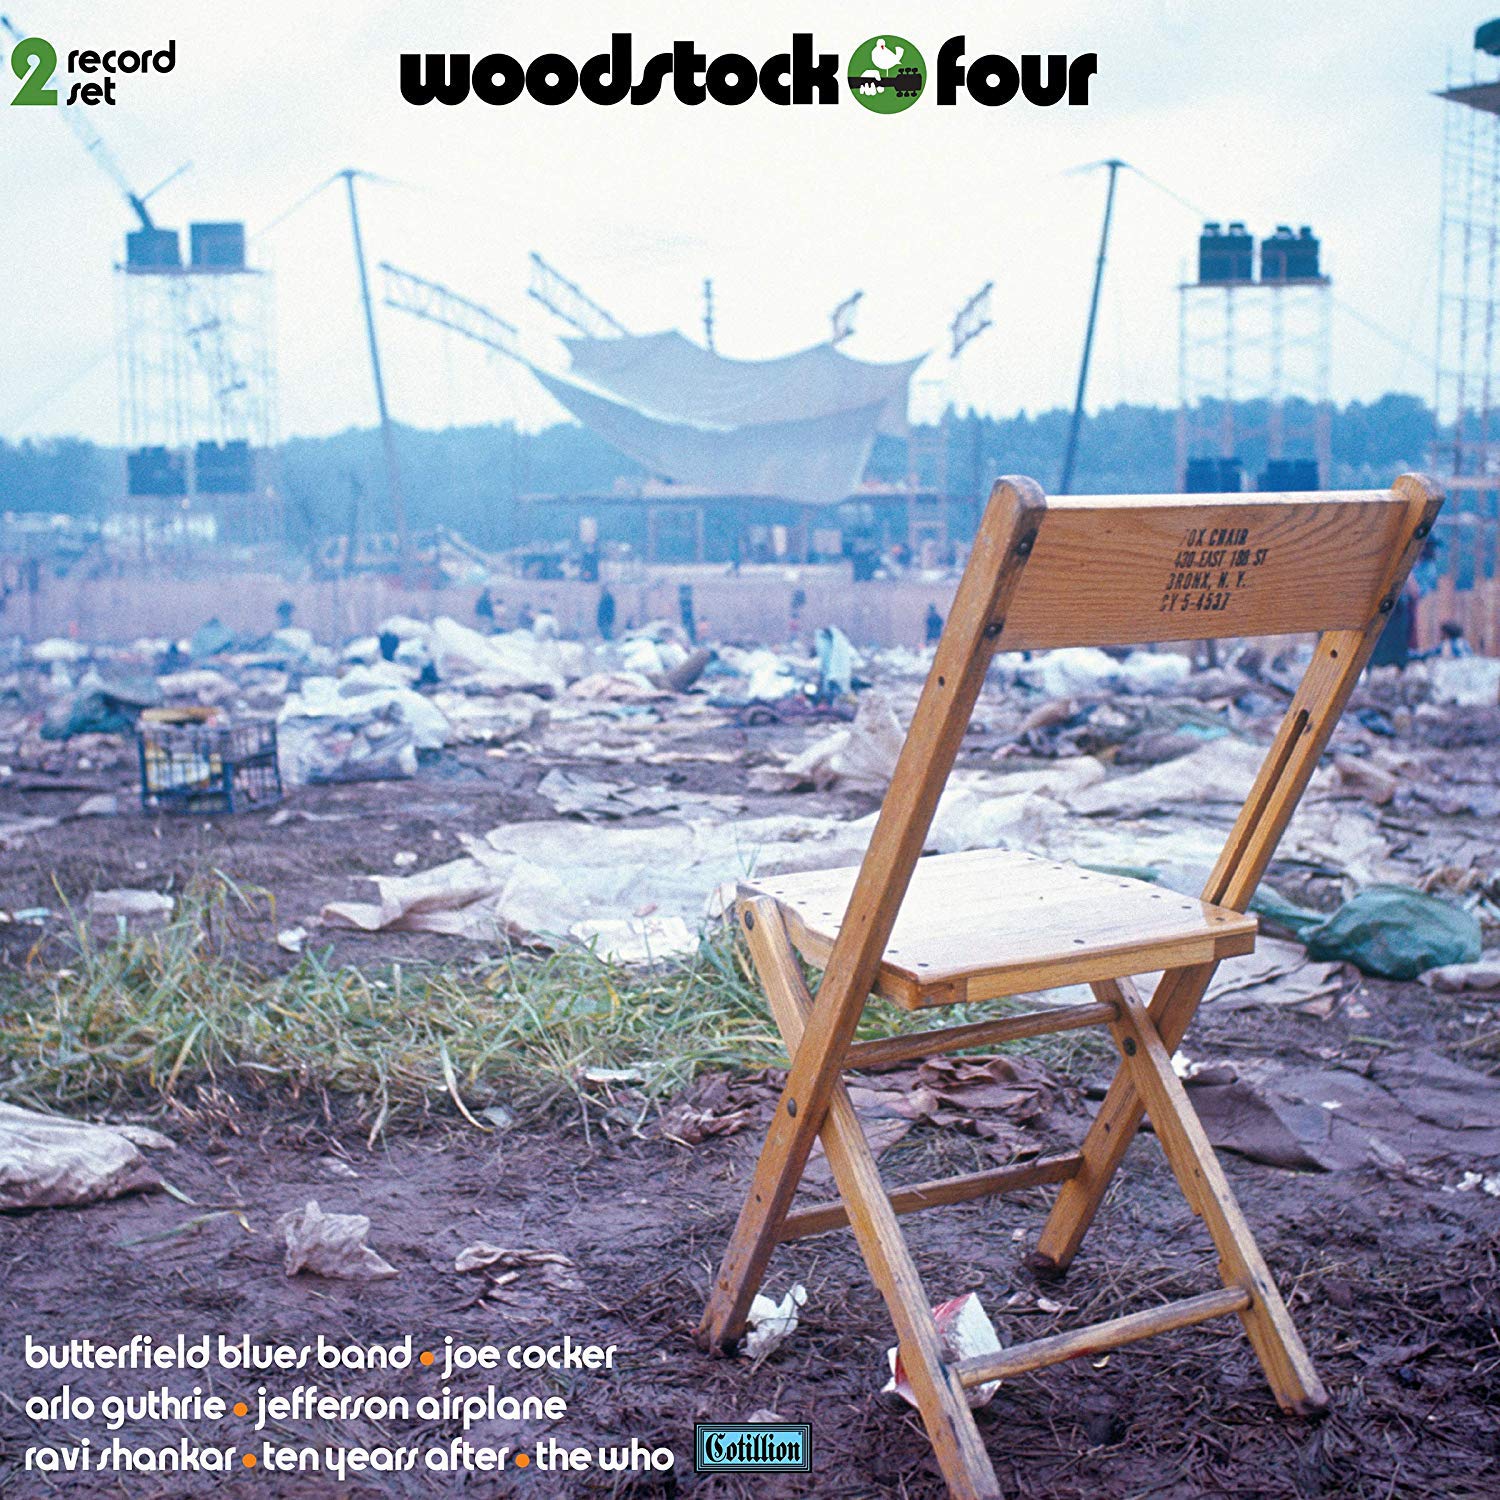 Woodstock IV